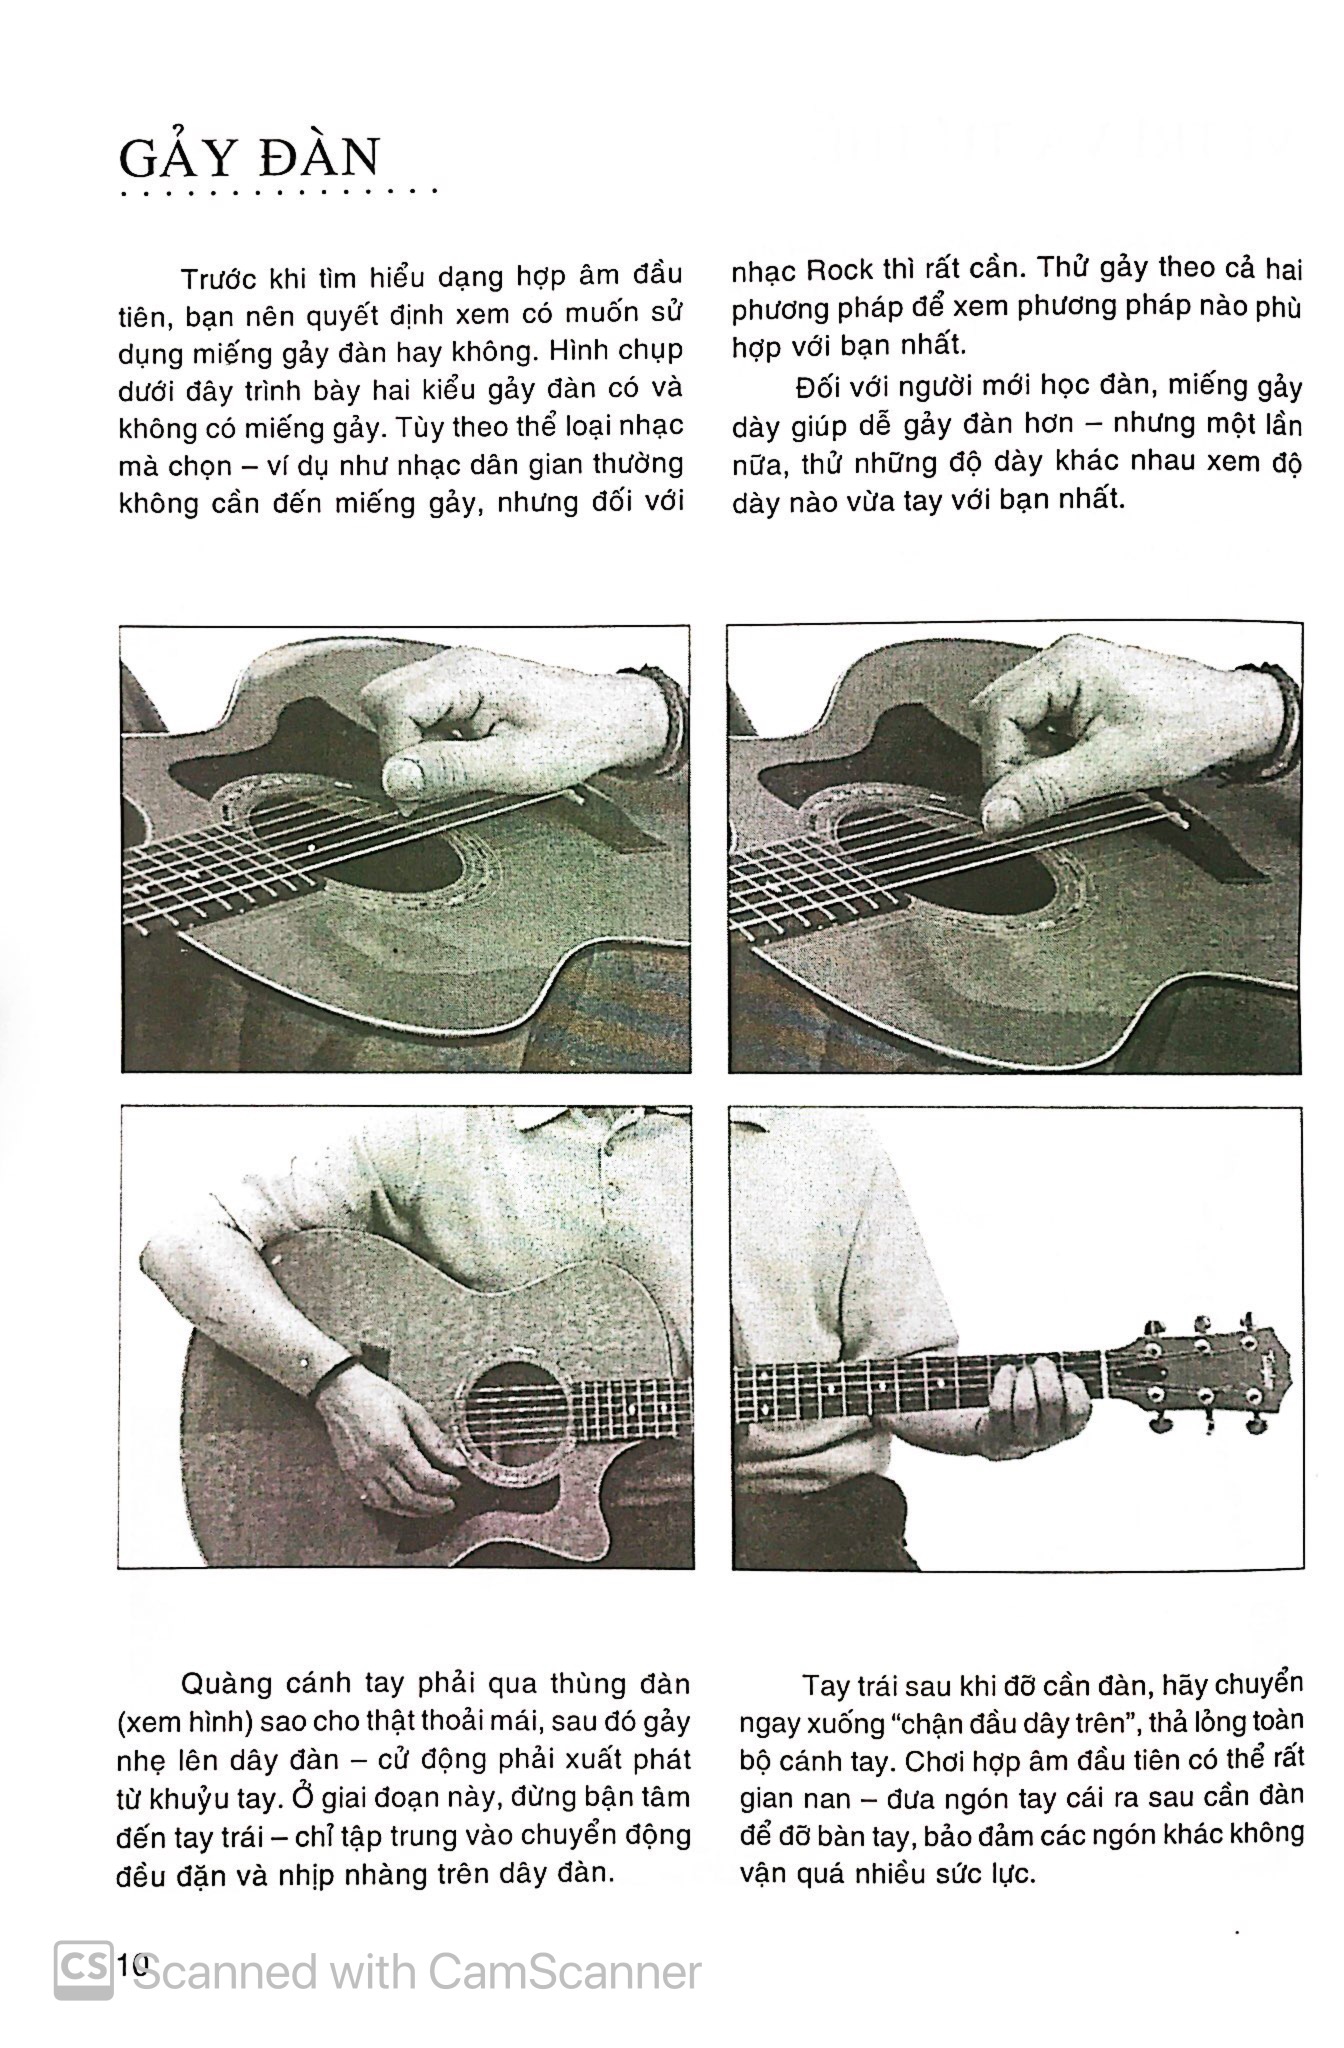 Chơi Đàn Guitar Bằng Hình Ảnh PDF